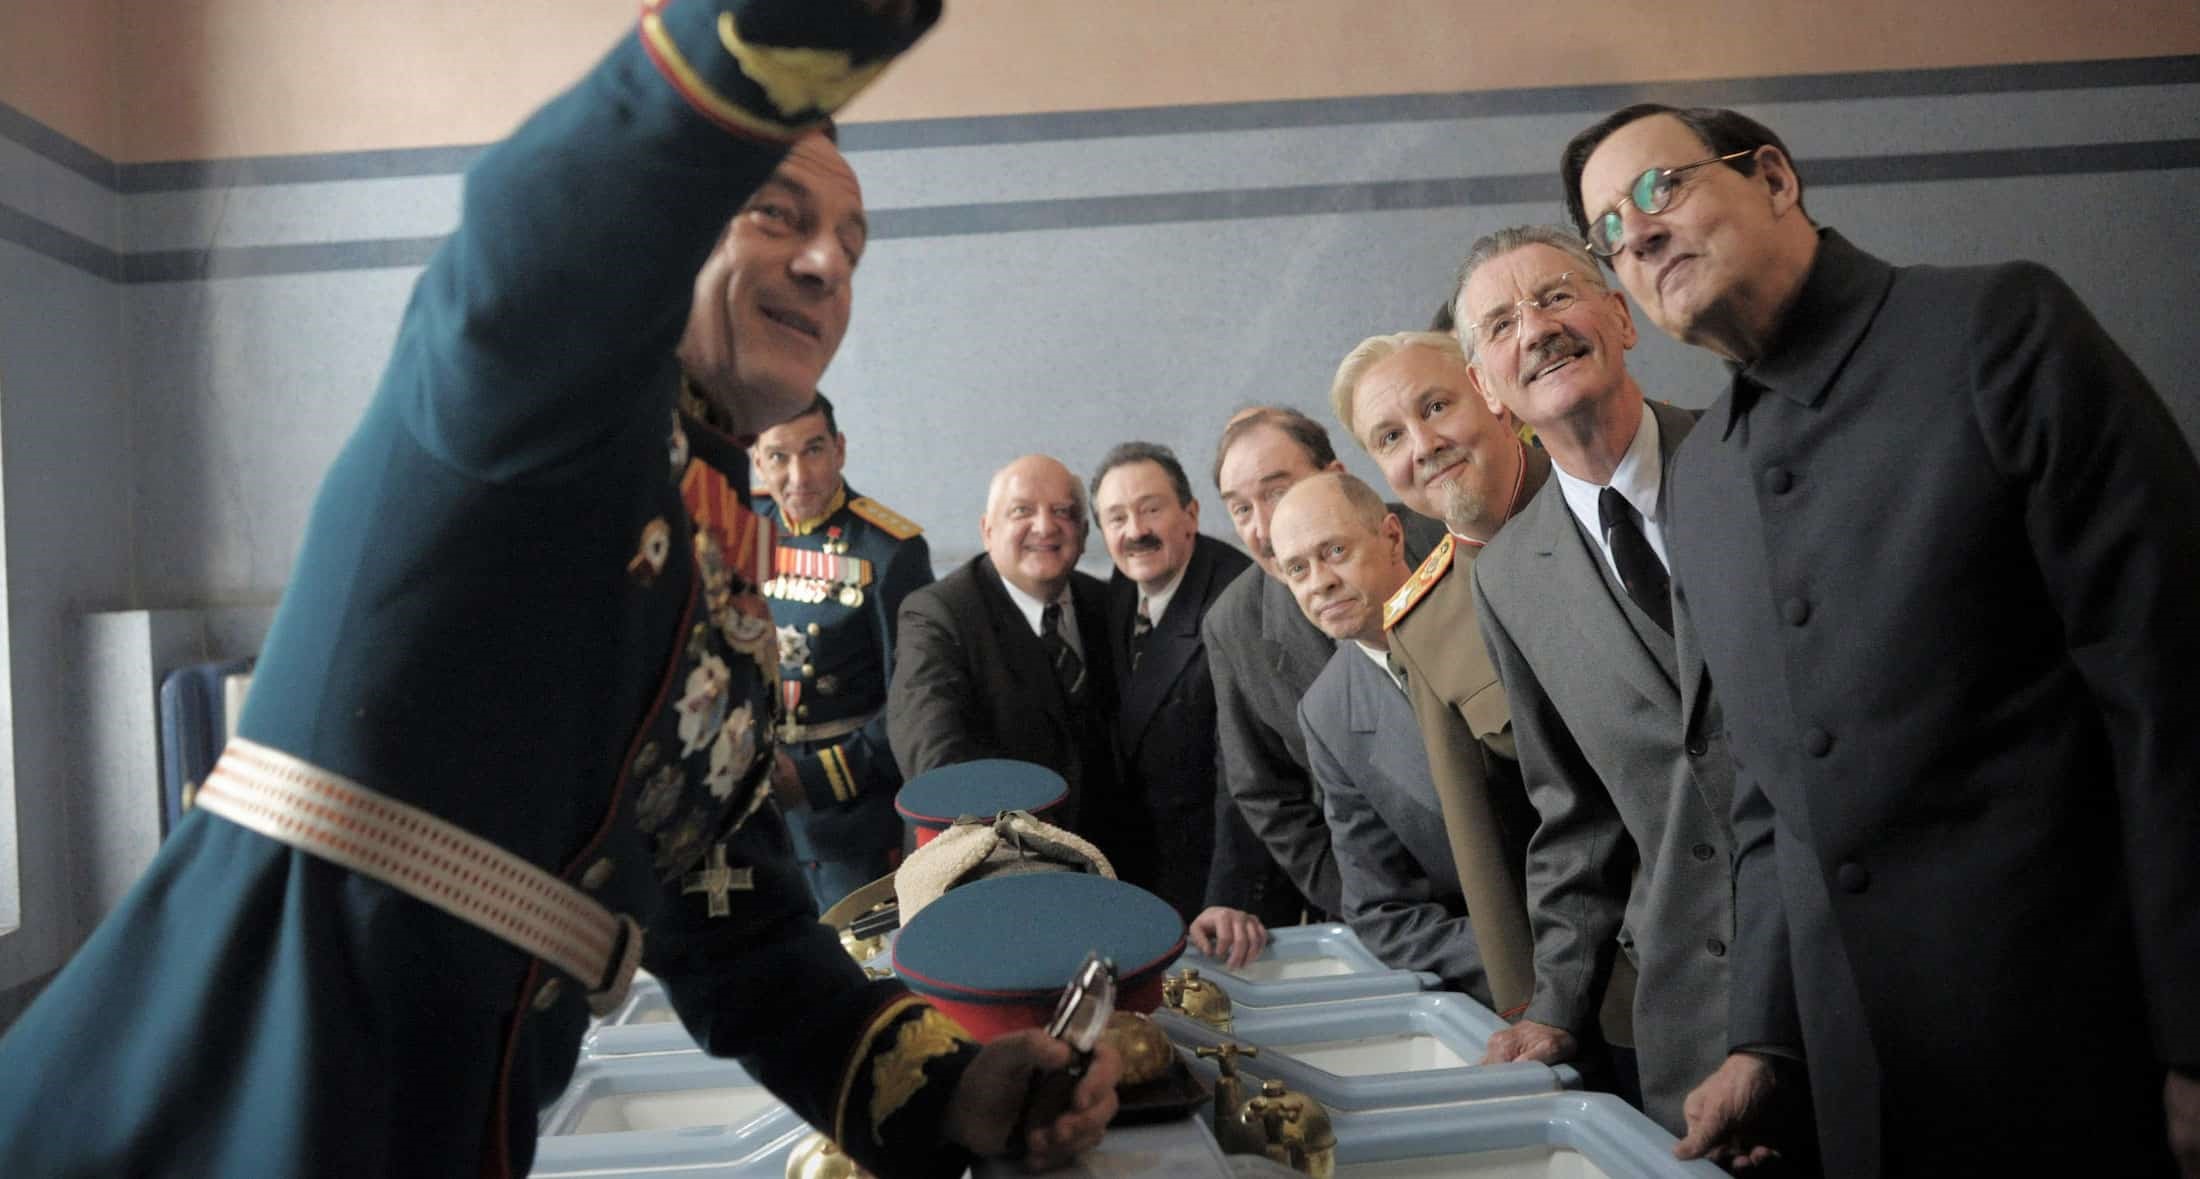 Bild från filmen "The Death of Stalin".